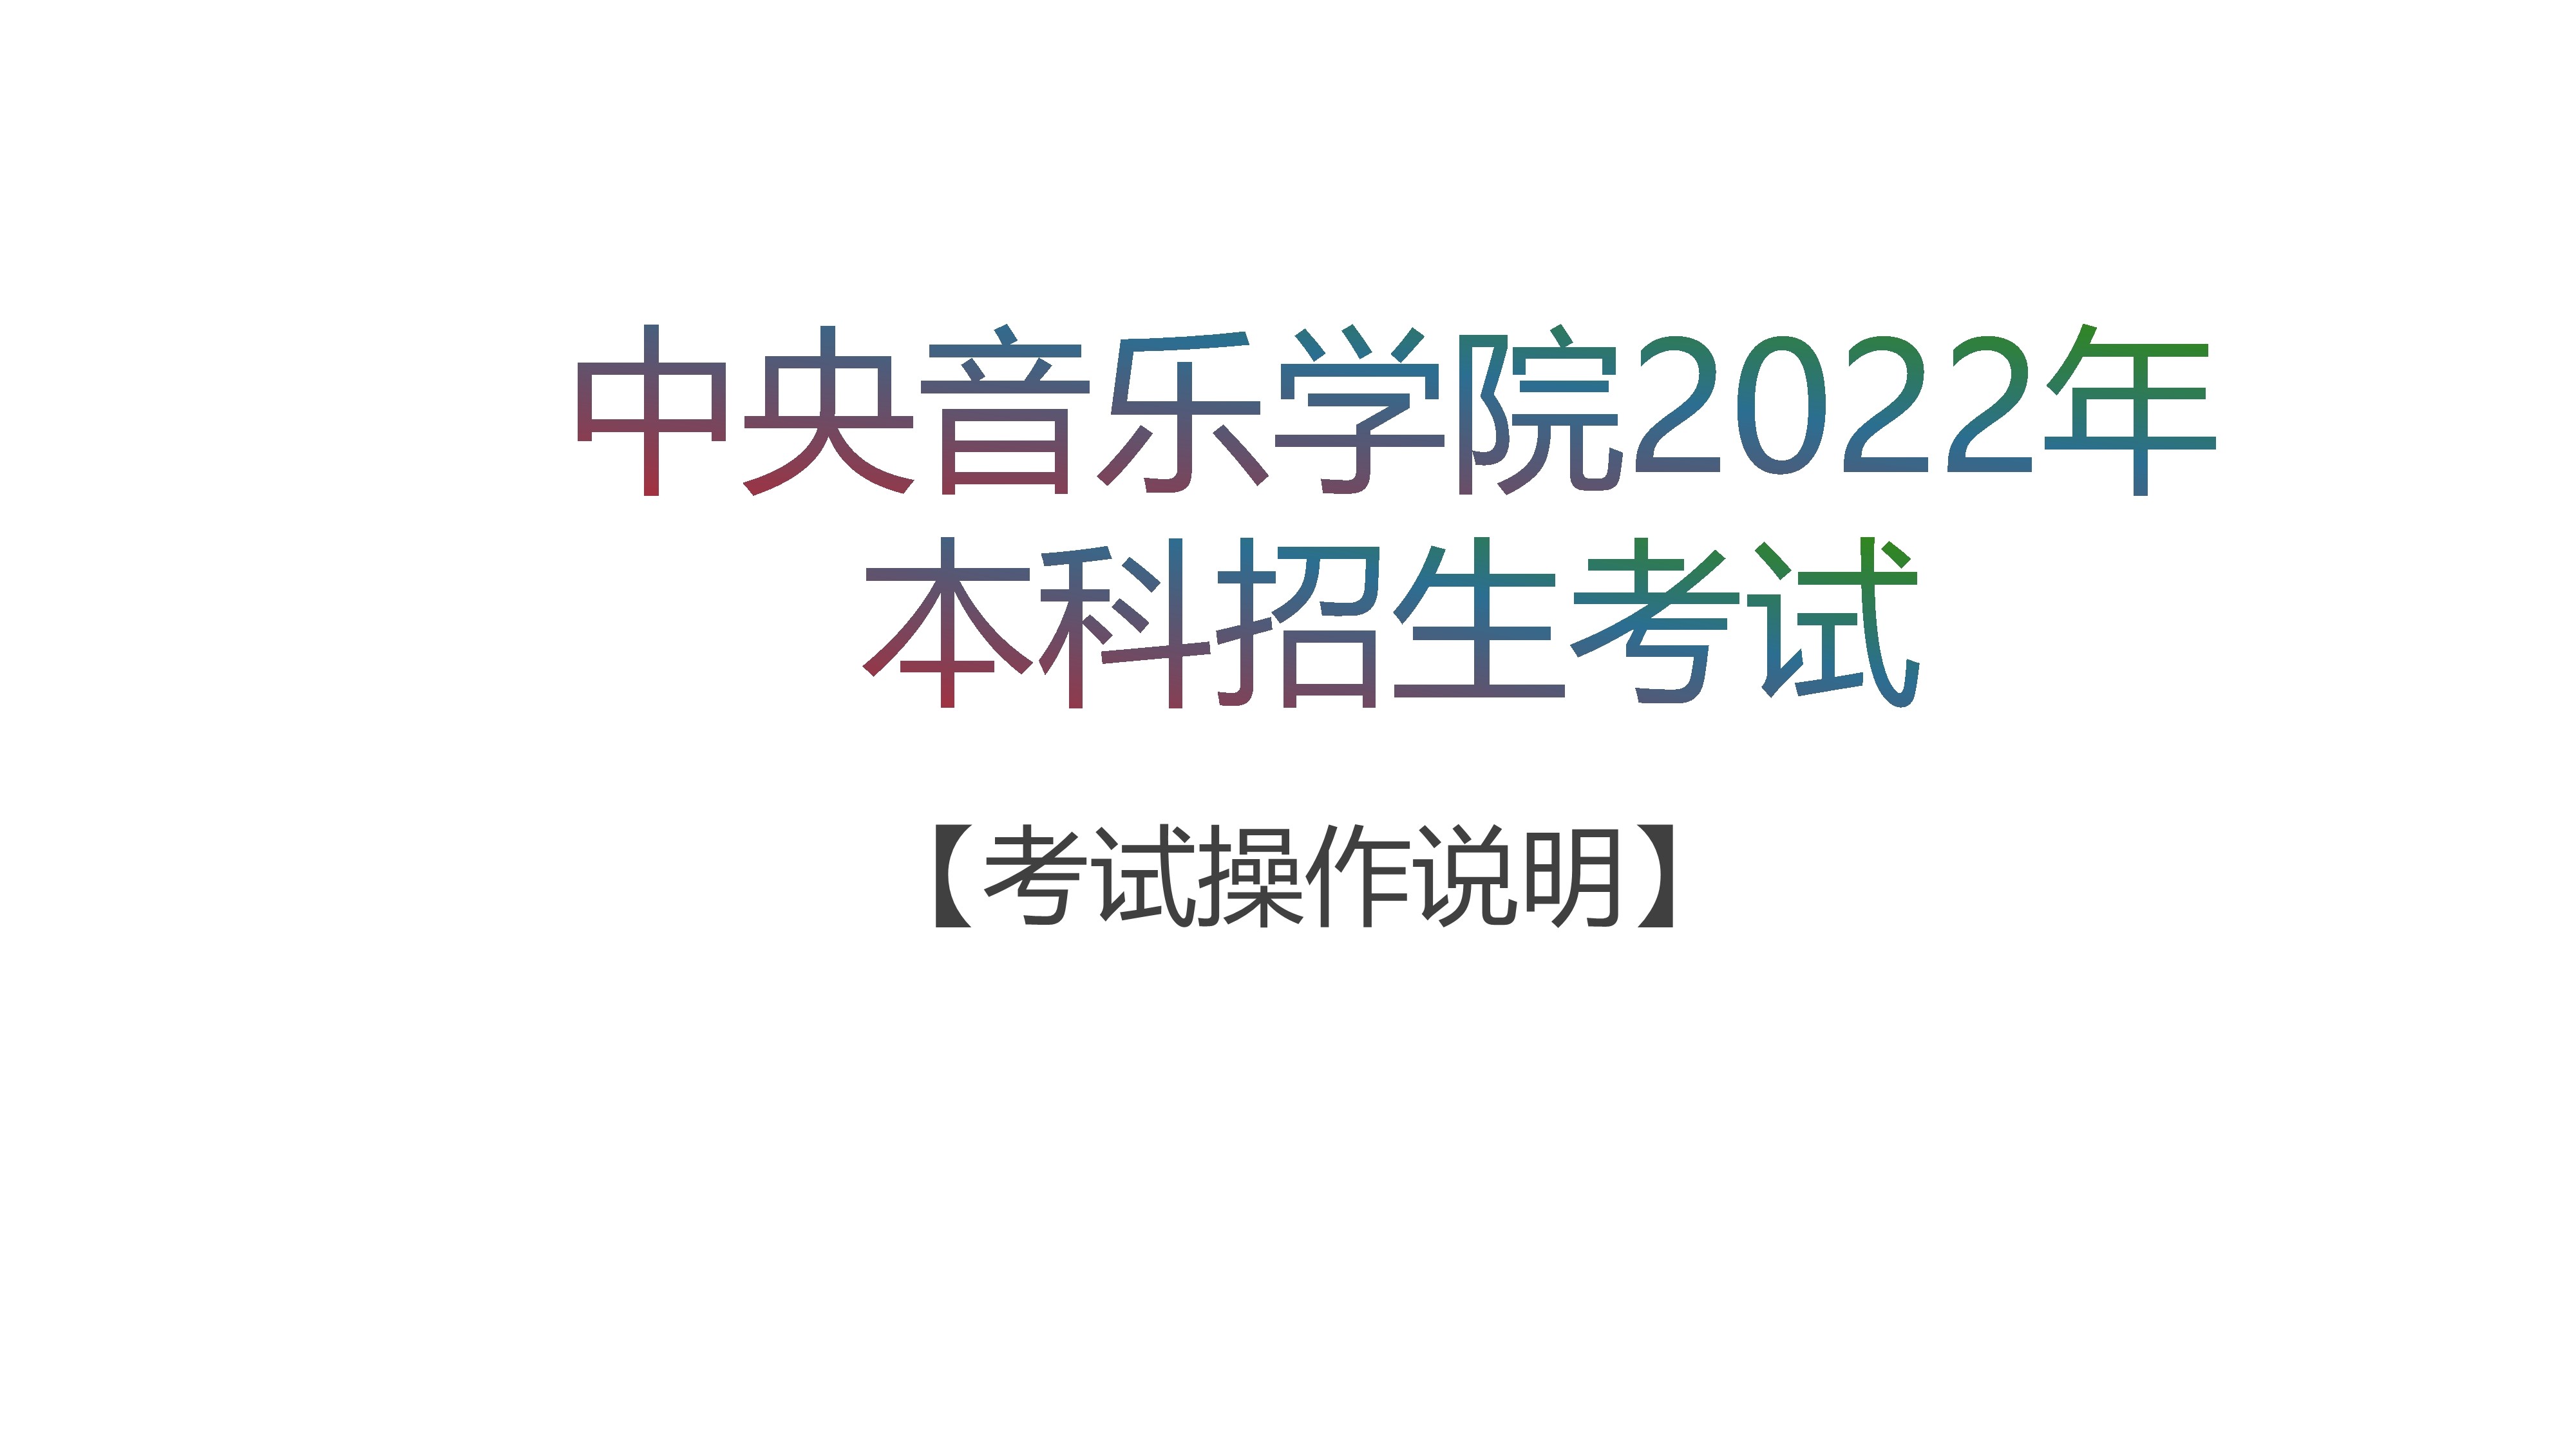 中央音乐学院2022本科招生 三试考试系统 操作手册_1.jpg